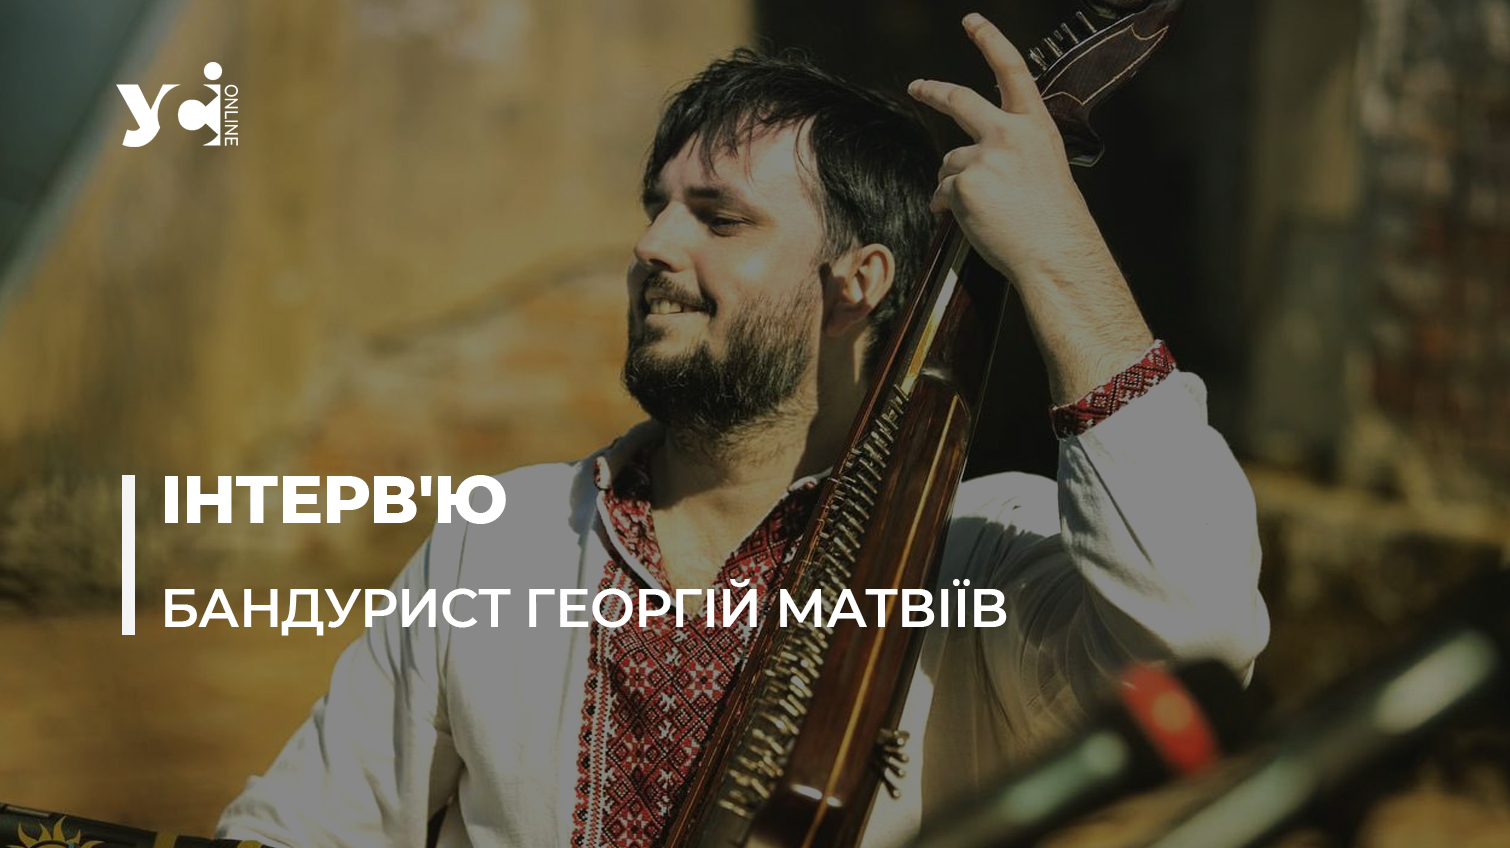 Необхідно нести в маси українську музику, пісню та культуру, – одеський бандурист з НАОНІ Георгій Матвіїв «фото»